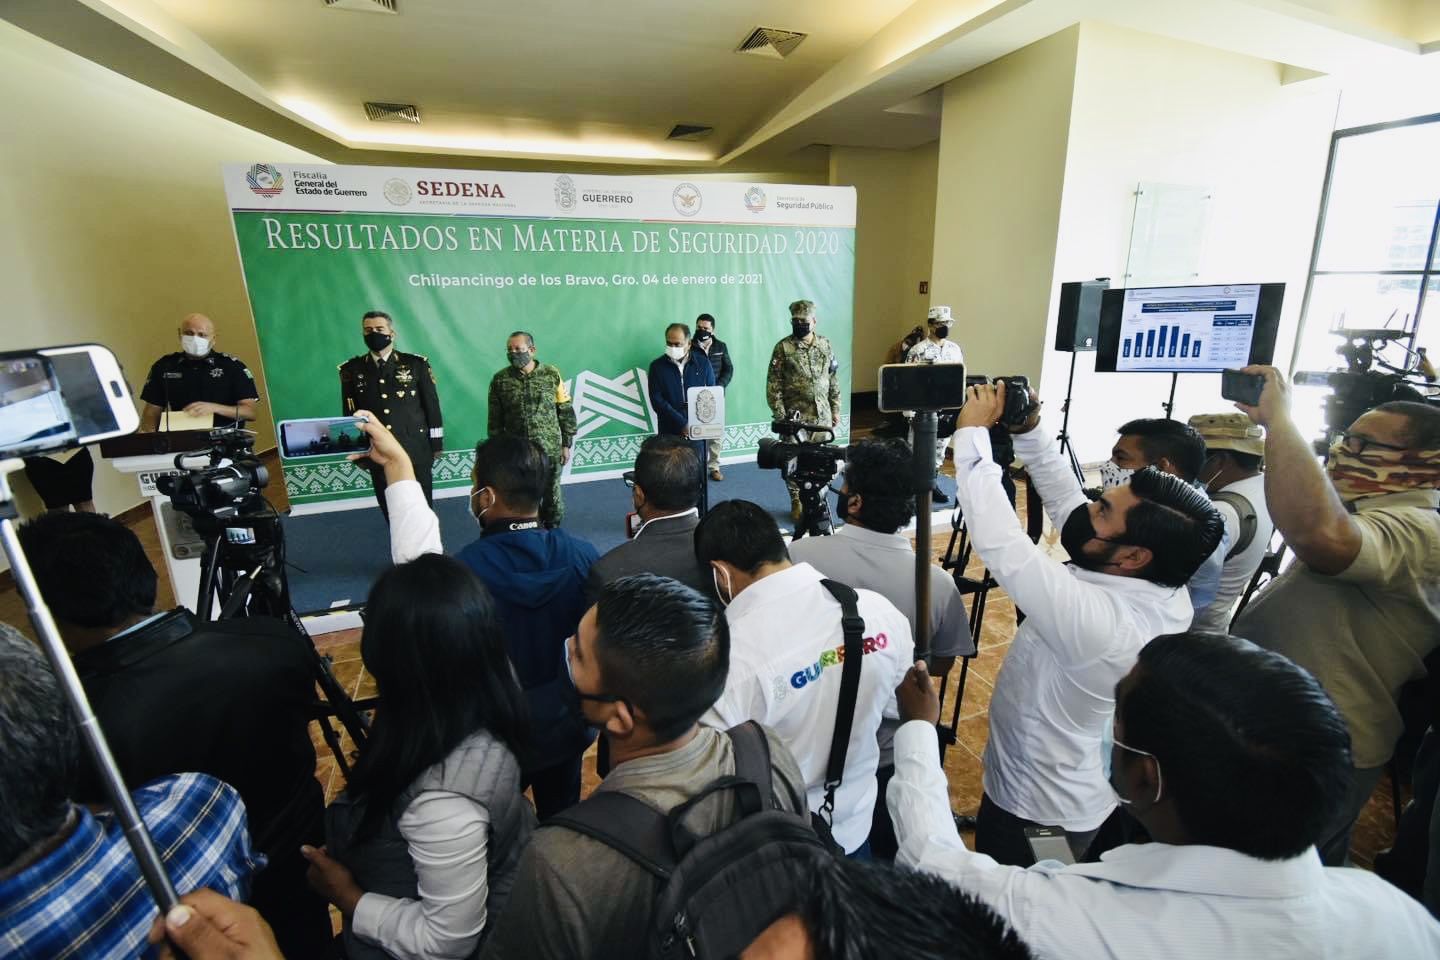 Presenta 2020 los menores indicadores delictivos en Guerrero de los últimos años: Gobernador Astudillo